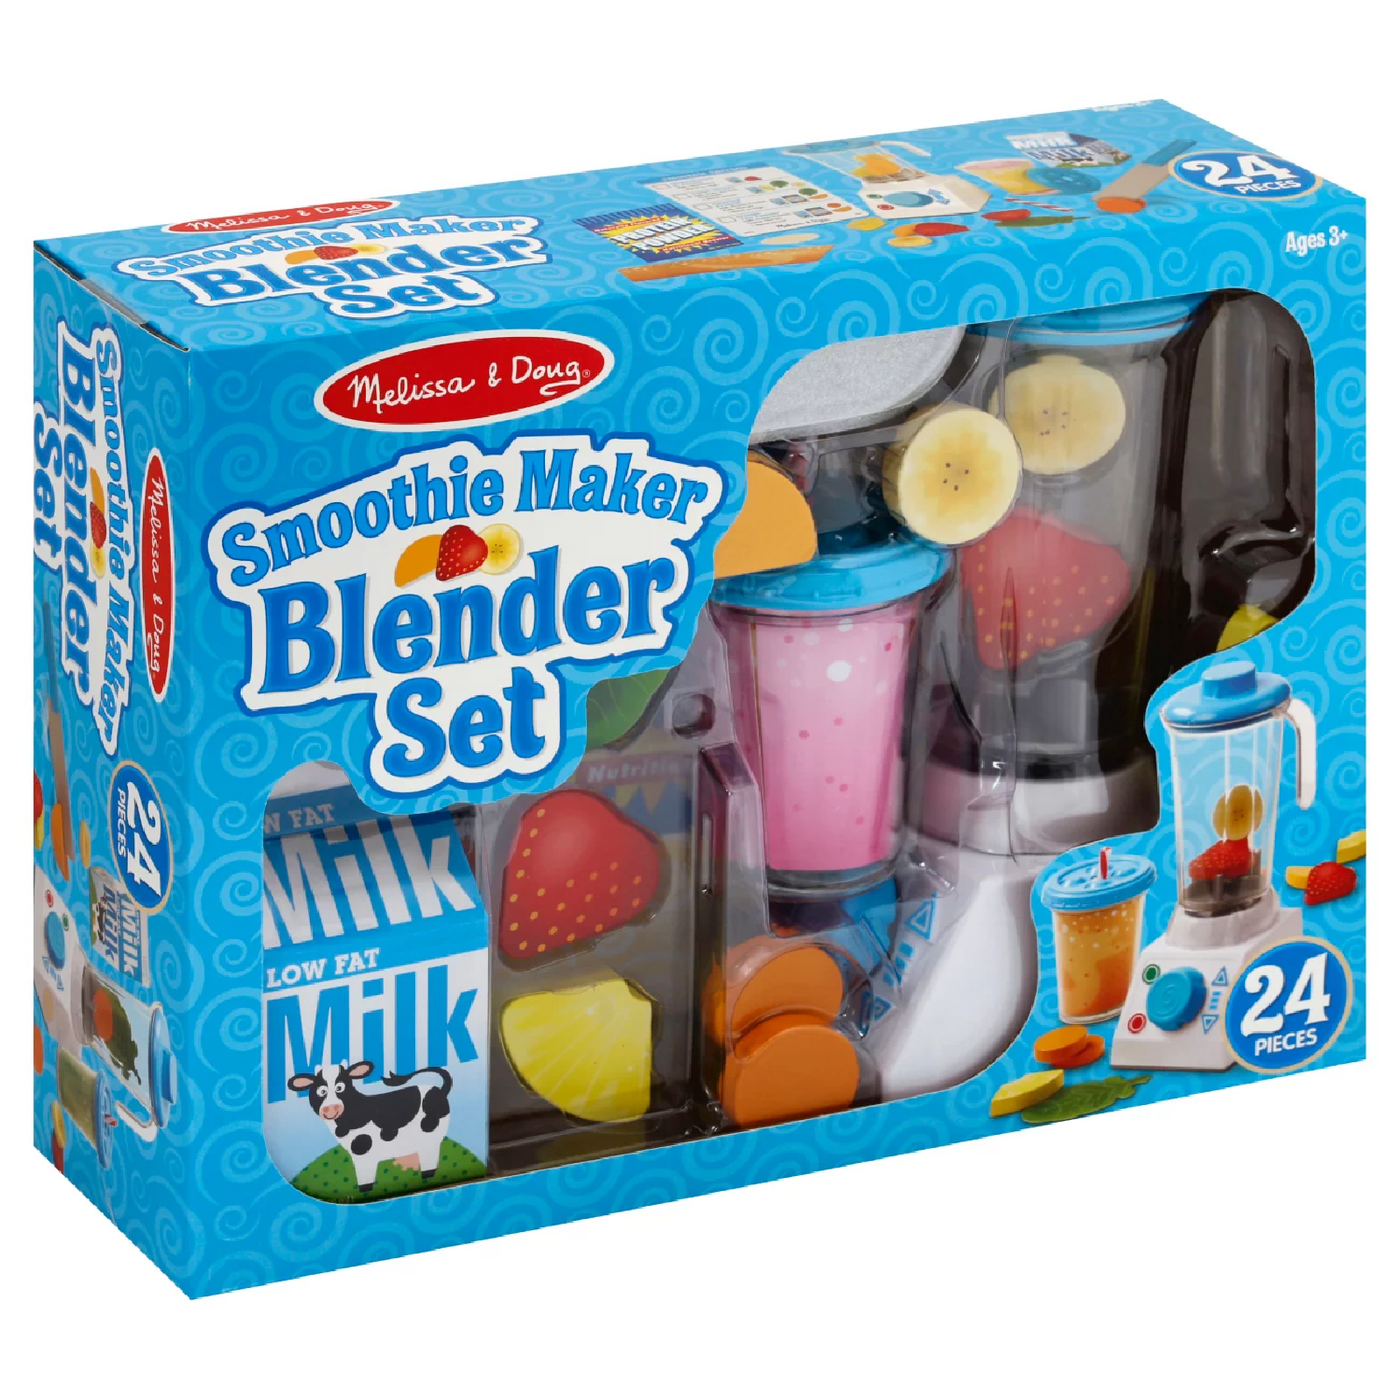 Melissa & Doug Smoothie Maker Blender Set - Smyths Toys 